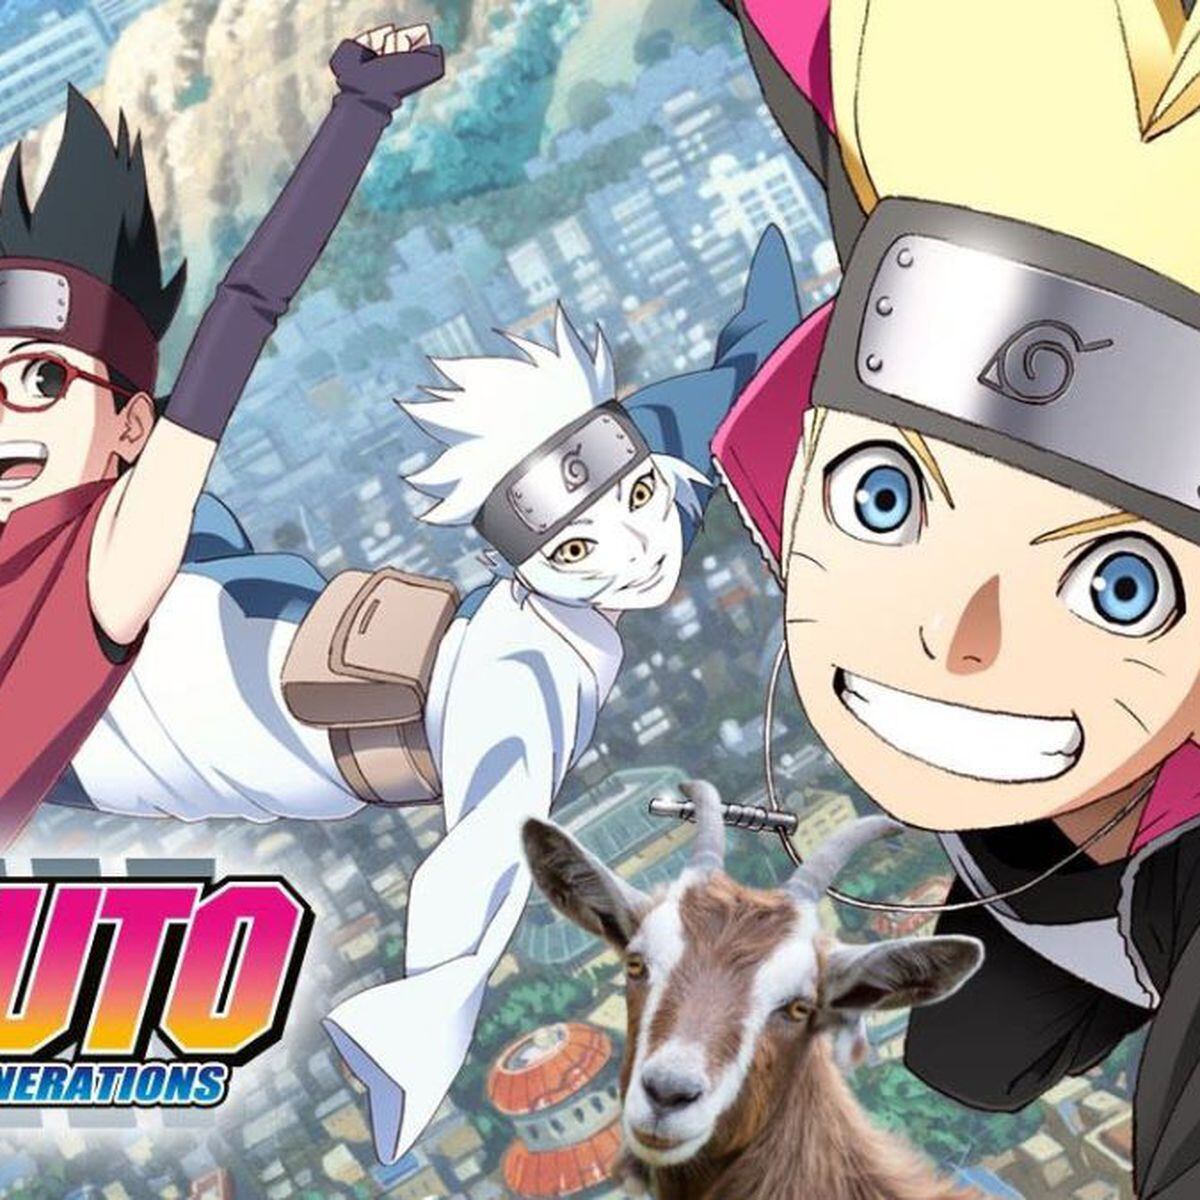 Naruto Boruto Next Generations: Historia de Kakashi como Hokage en manga y  anime, Naruto Shippuden, Ver Naruto Online, Naruto Latino, Anime YT, JK Anime, Animeid, Cine y series